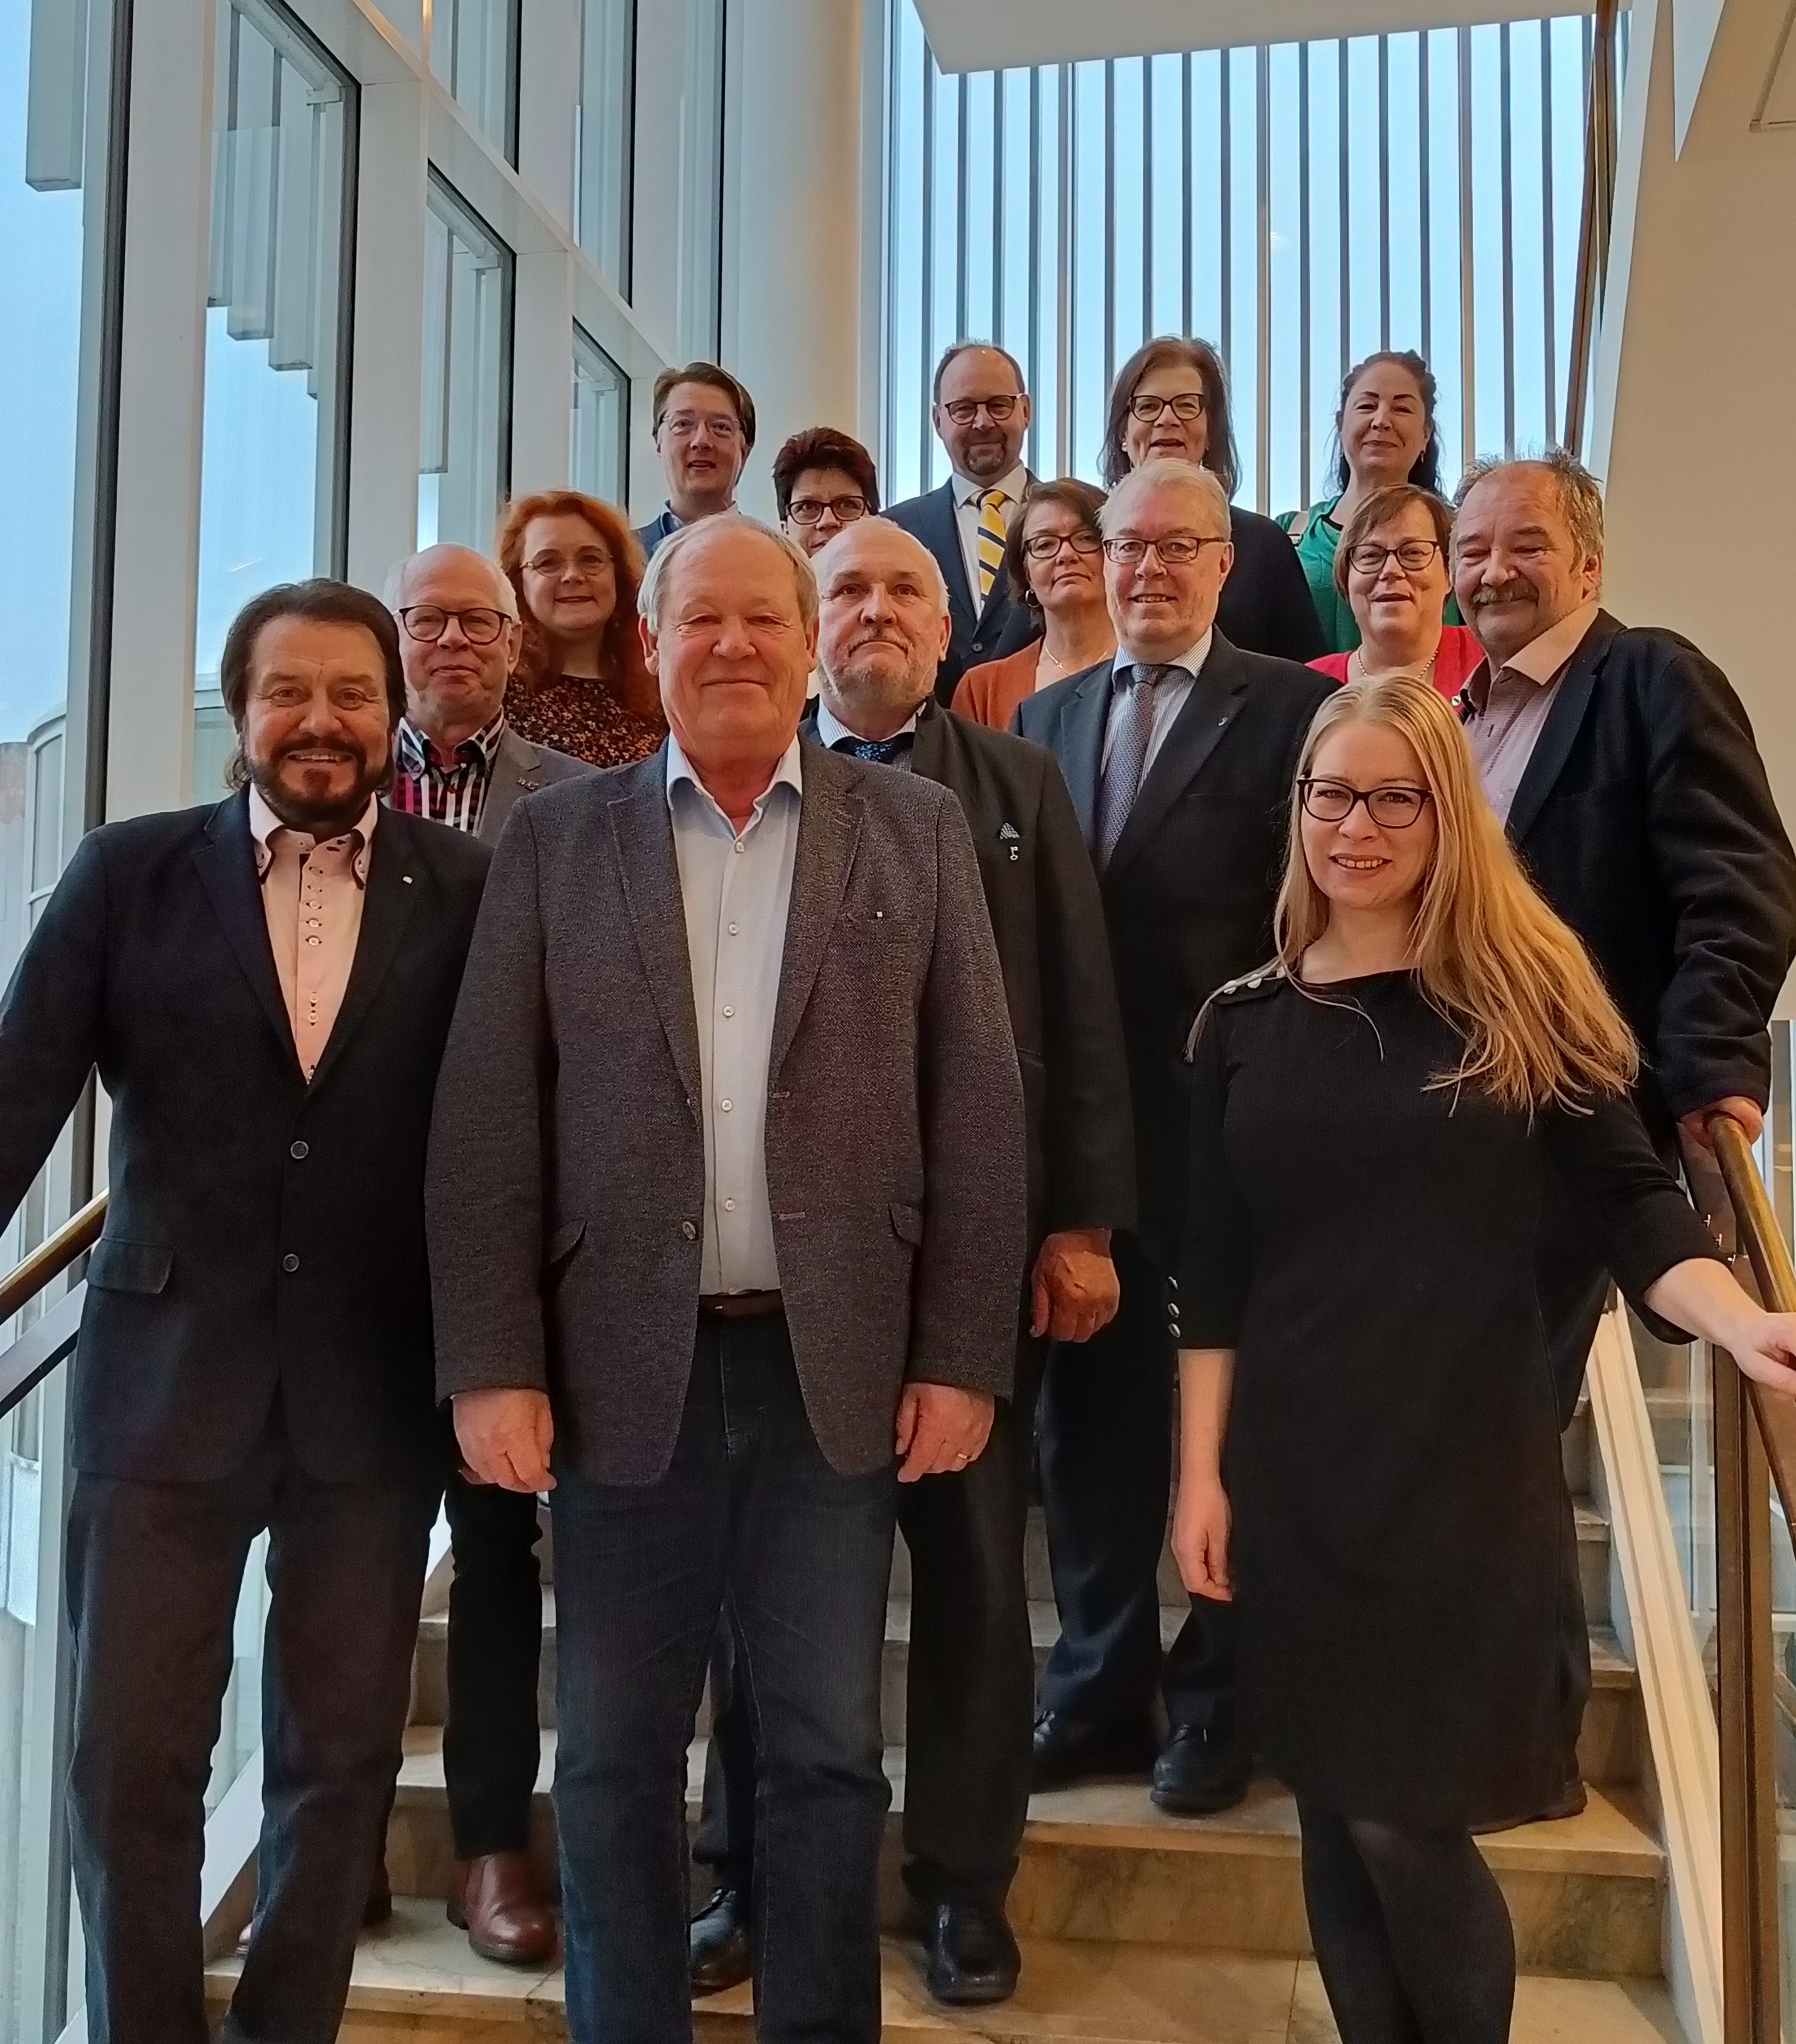 Etelä-Savon maakuntahallitus kokoontui viimeistä kertaa nykyisessä kokoonpanossaan 18.10.2021 Konsertti- ja kongressikeskus Mikaelissa Mikkelissä.